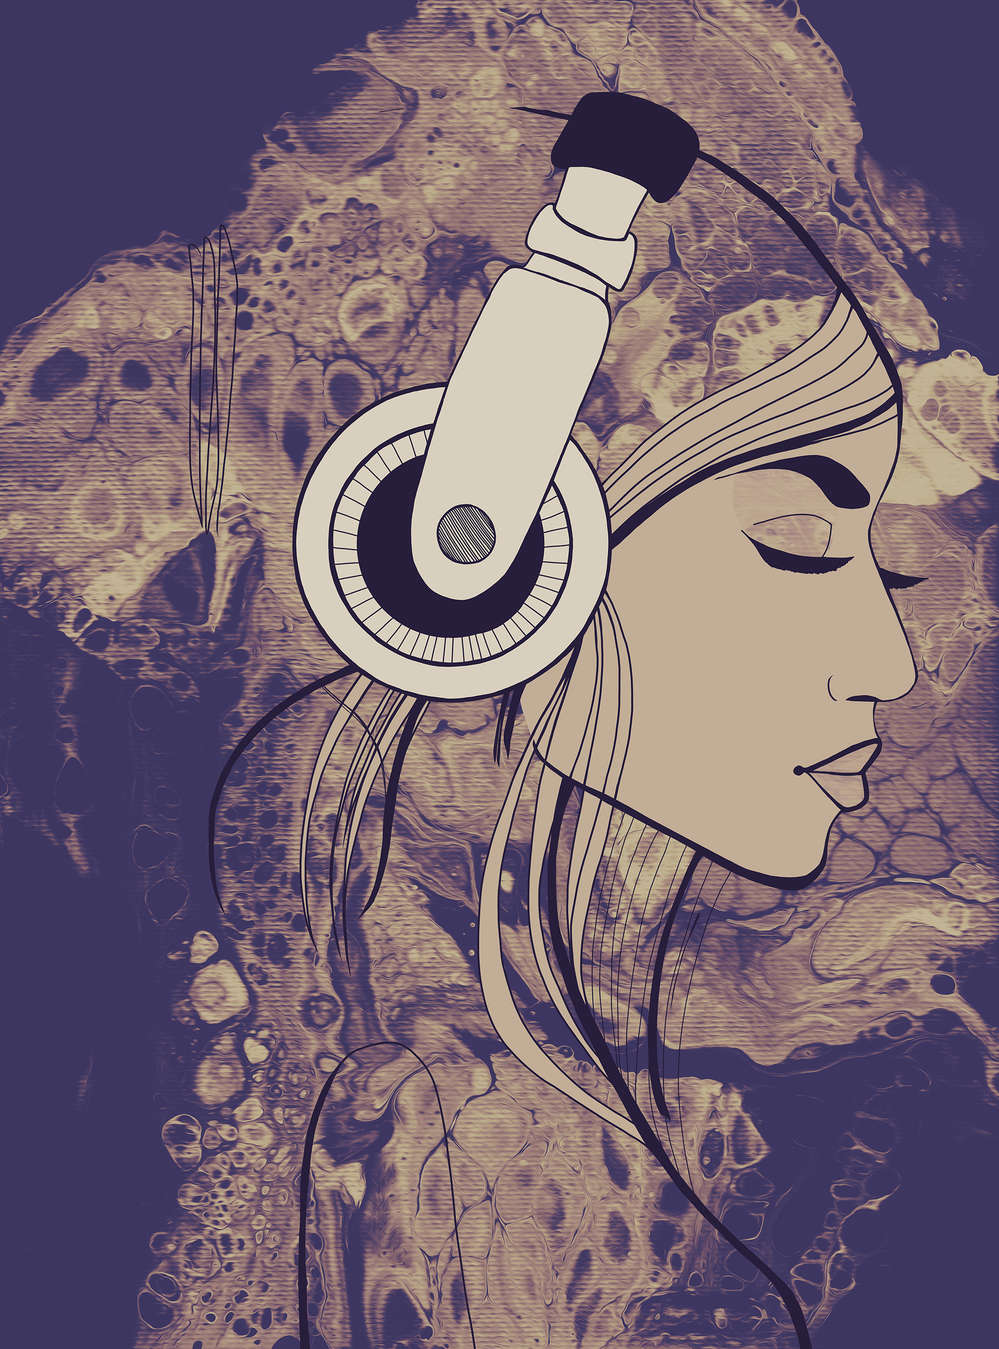             Fototapete Musik Frau mit Kopfhörern im Line Art Stil
        